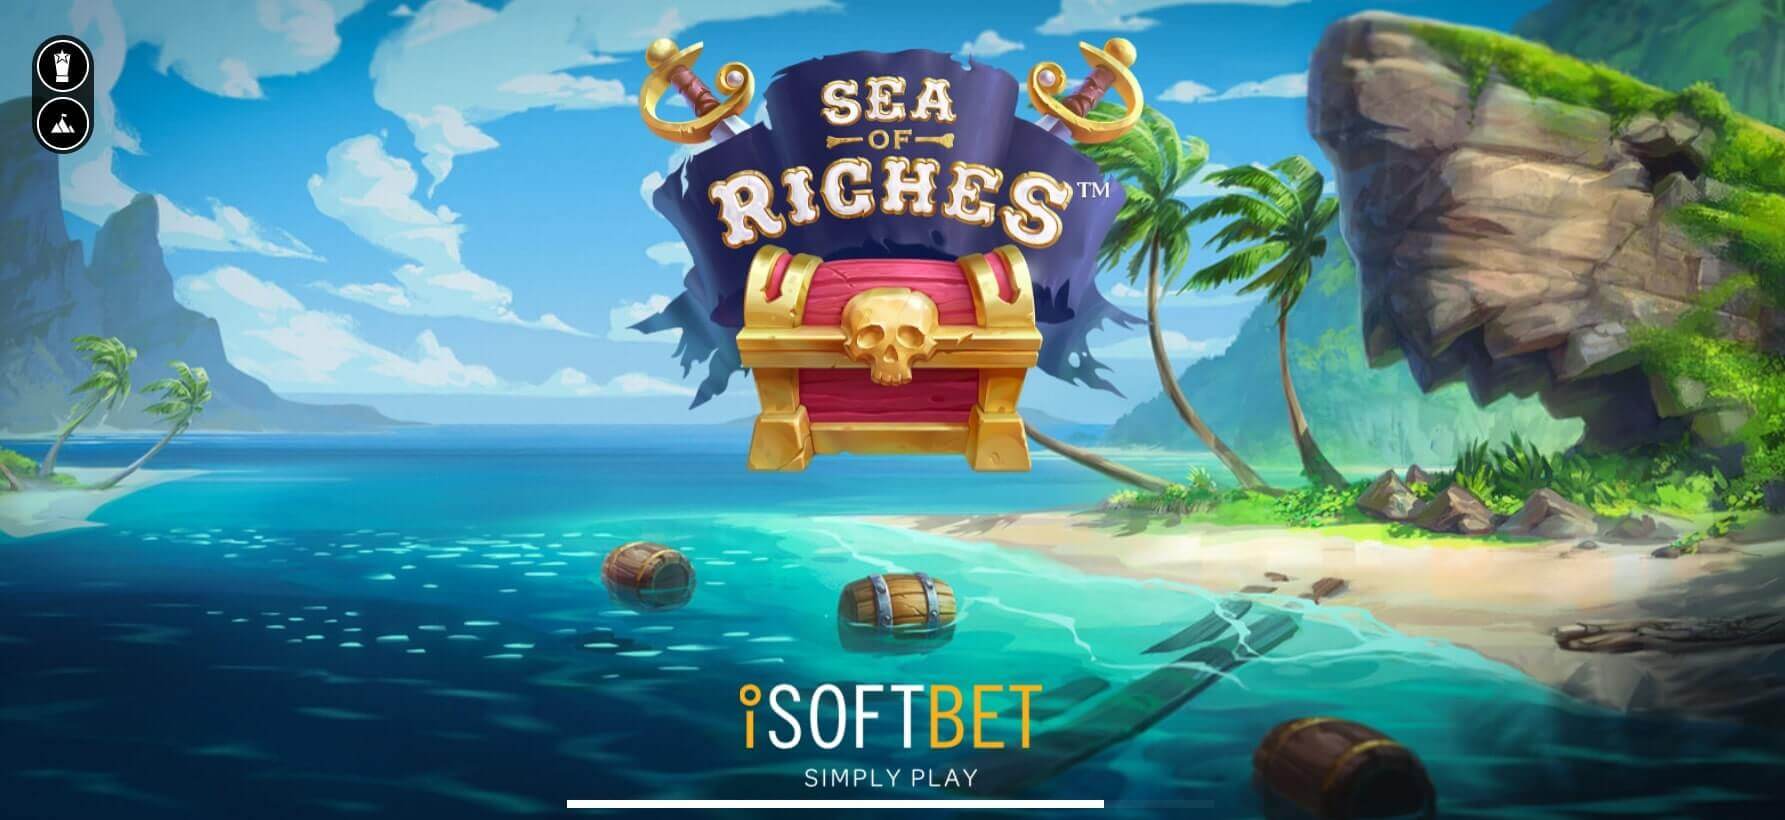 Cách săn thưởng slot game Sea of Riches ra sao?